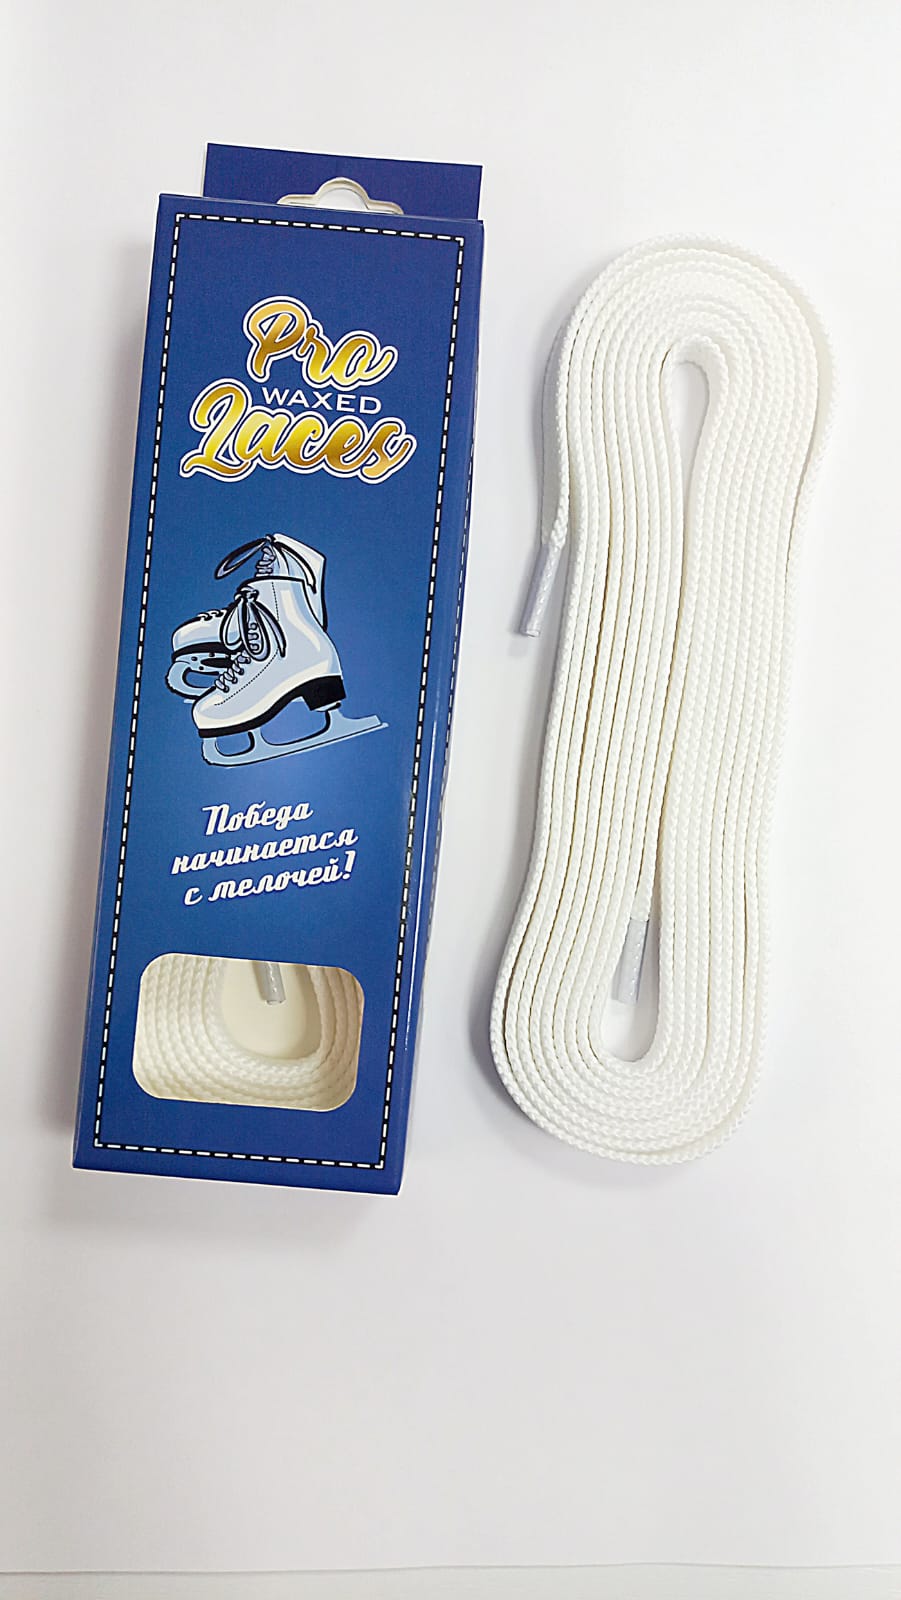 Шнурки RPS Pro Laces Белые от интернет магазина ТДФК-ЮГ